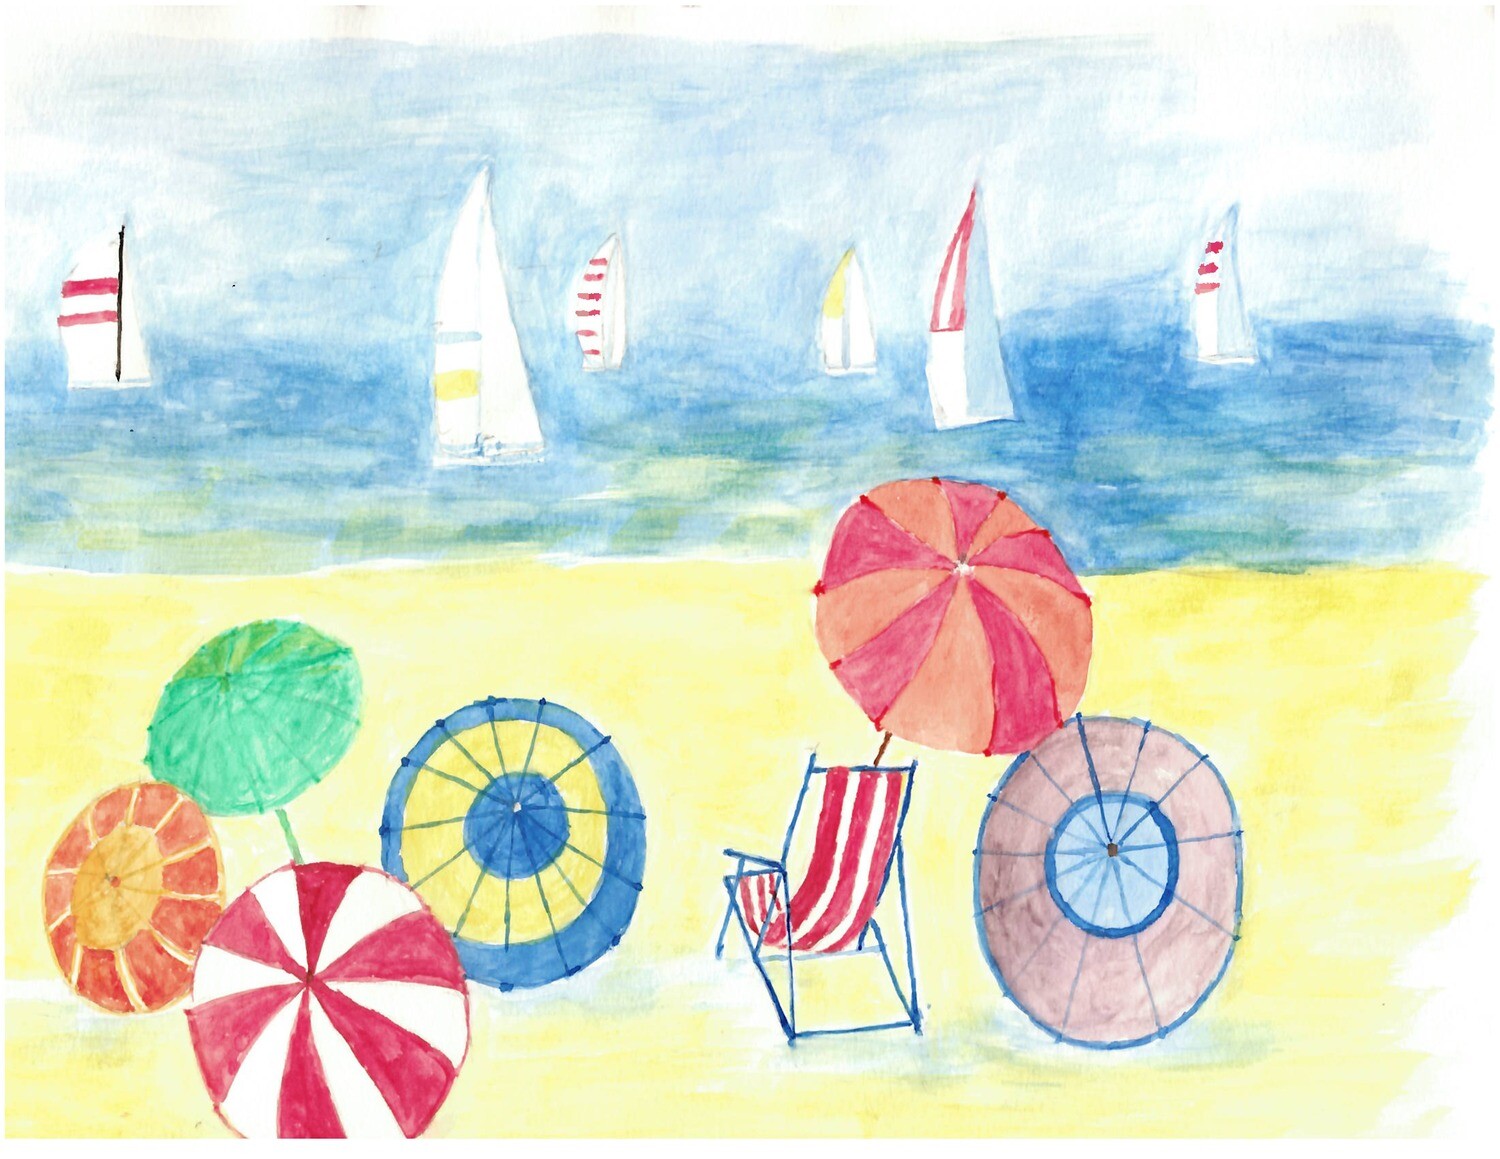 Print 11x17 - Beach & Sailboat by Ho Qing